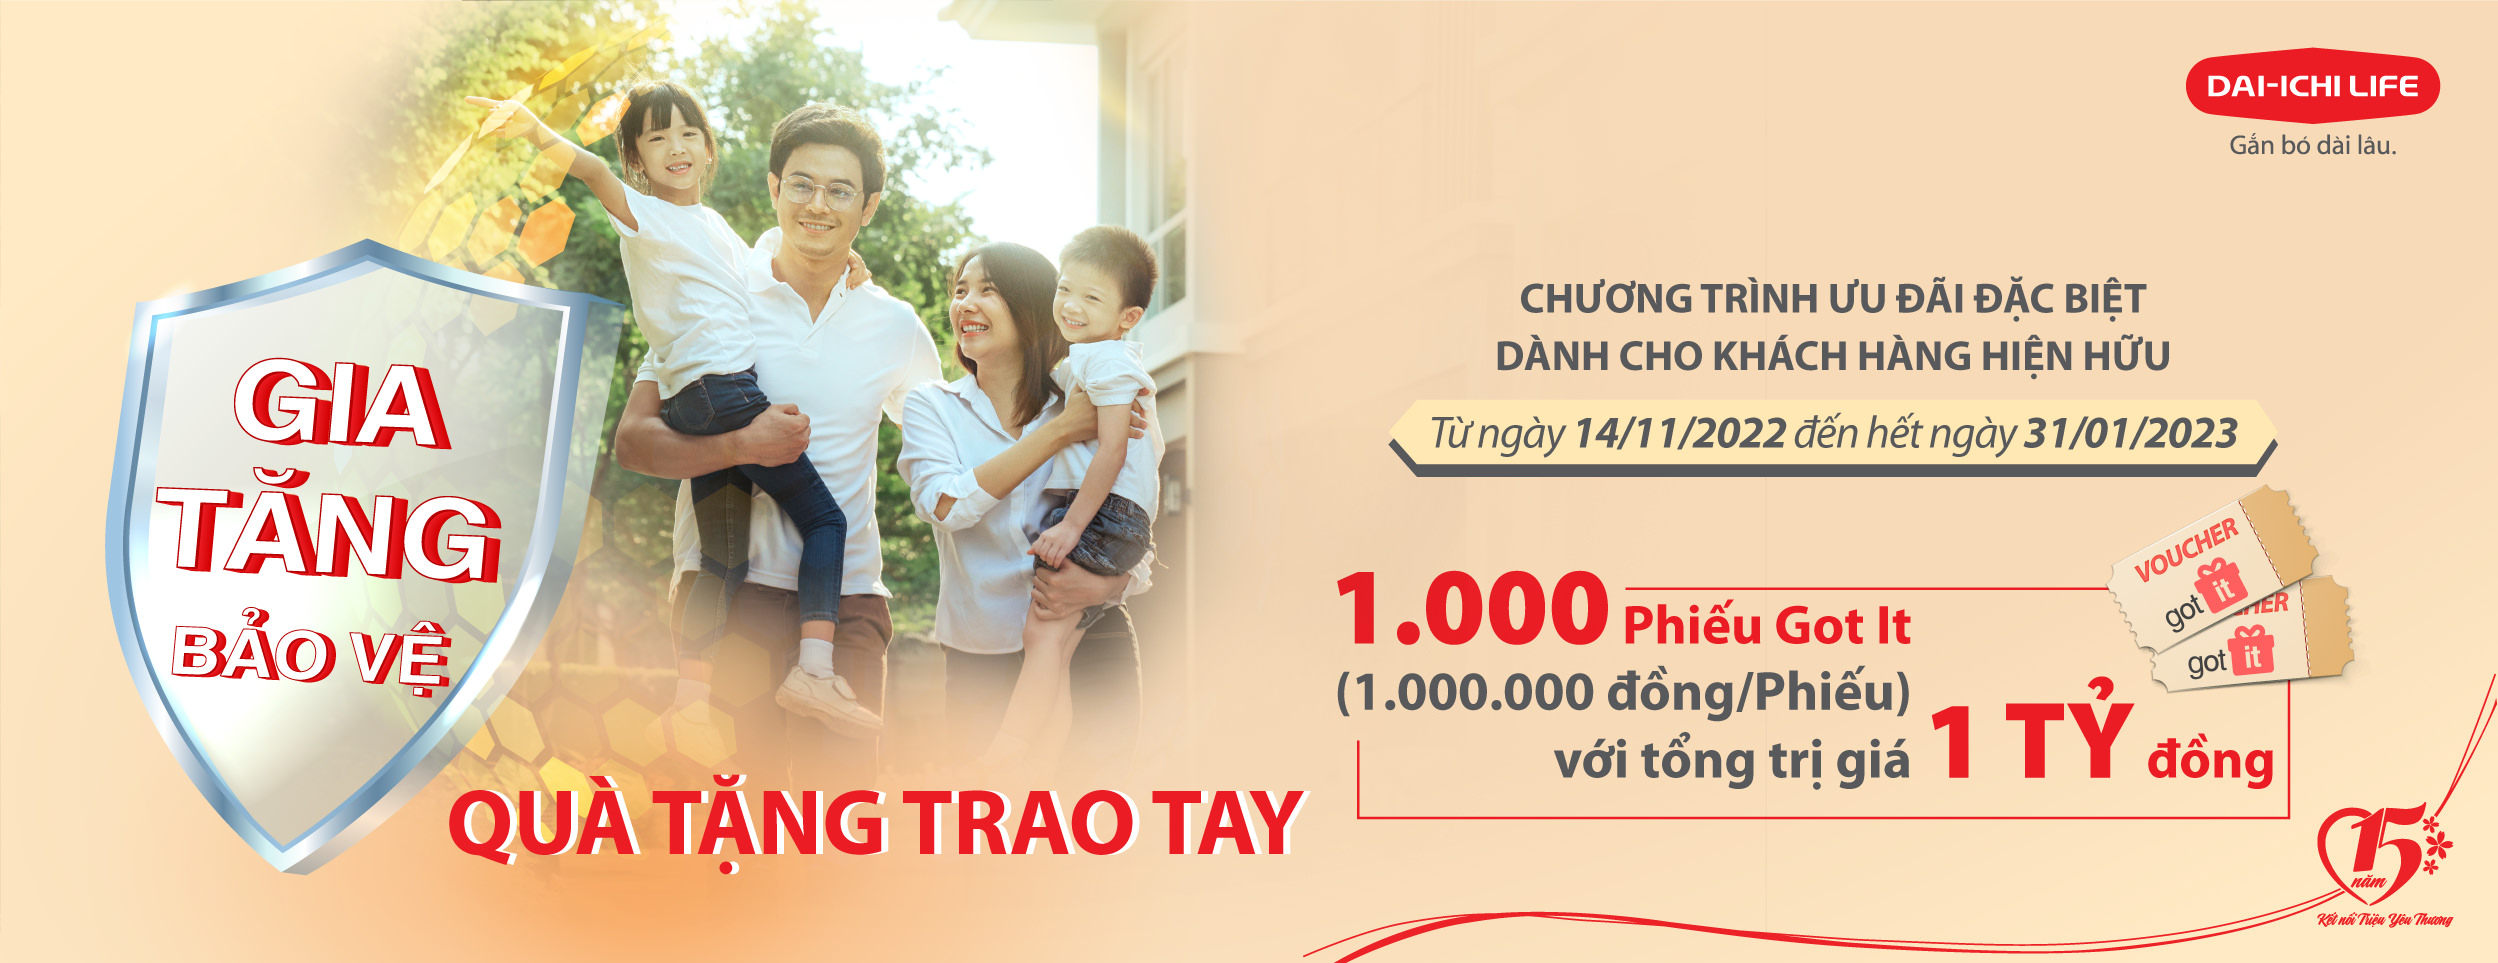 Dai-ichi Life Việt Nam triển khai Chương trình Ưu đãi đặc biệt “Gia tăng bảo vệ, Quà tặng trao tay”...